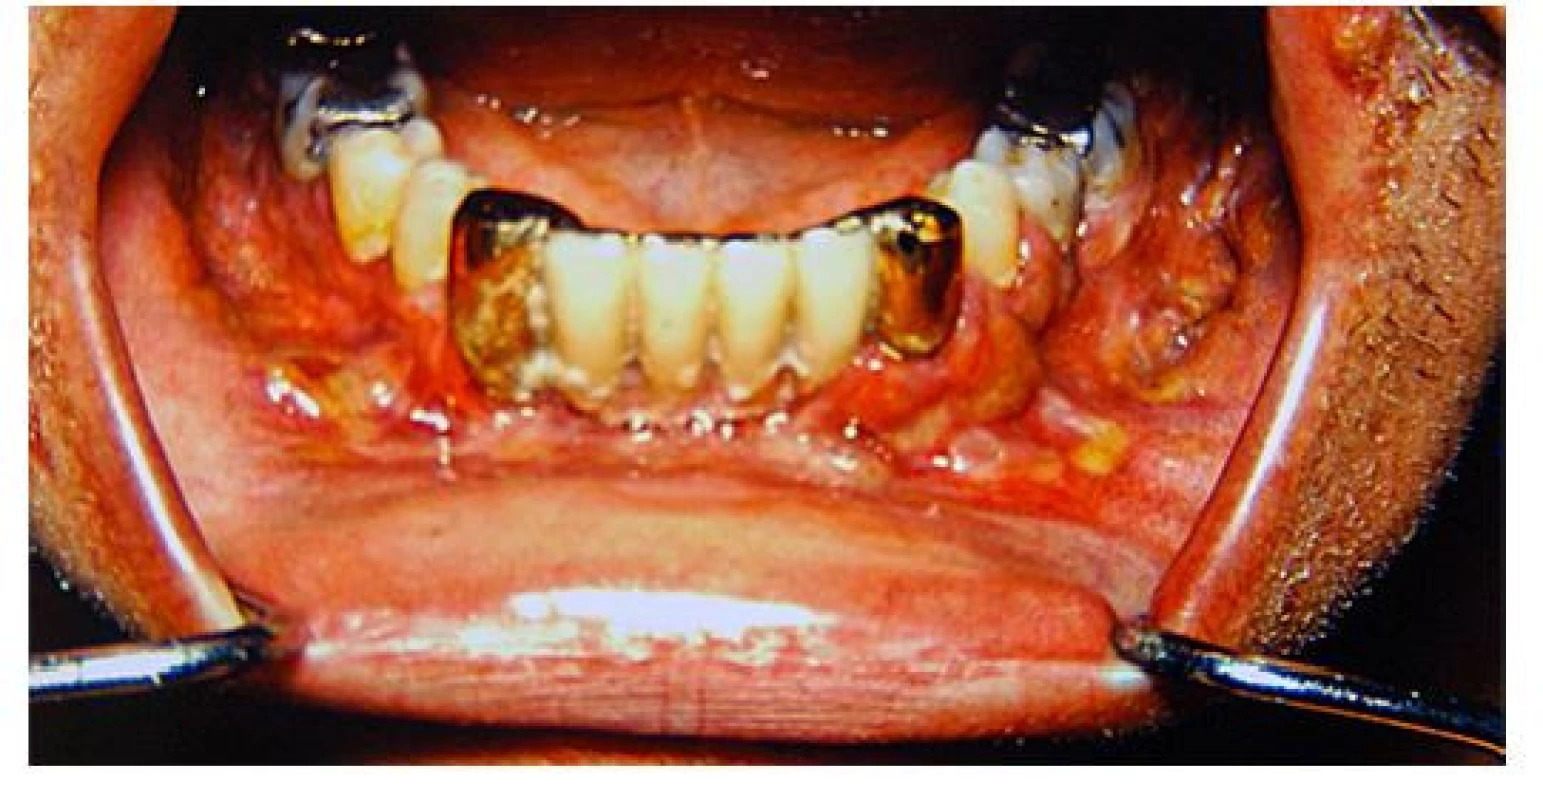 Postižení dásní LCH může způsobit proces podobný parodontóze
a může vést k uvolňování zubů. V některých případech však postihuje i kost
a vede k destrukci čelisti. Tyto snímky zapůjčil prof. Fassmann ze svého
archivu